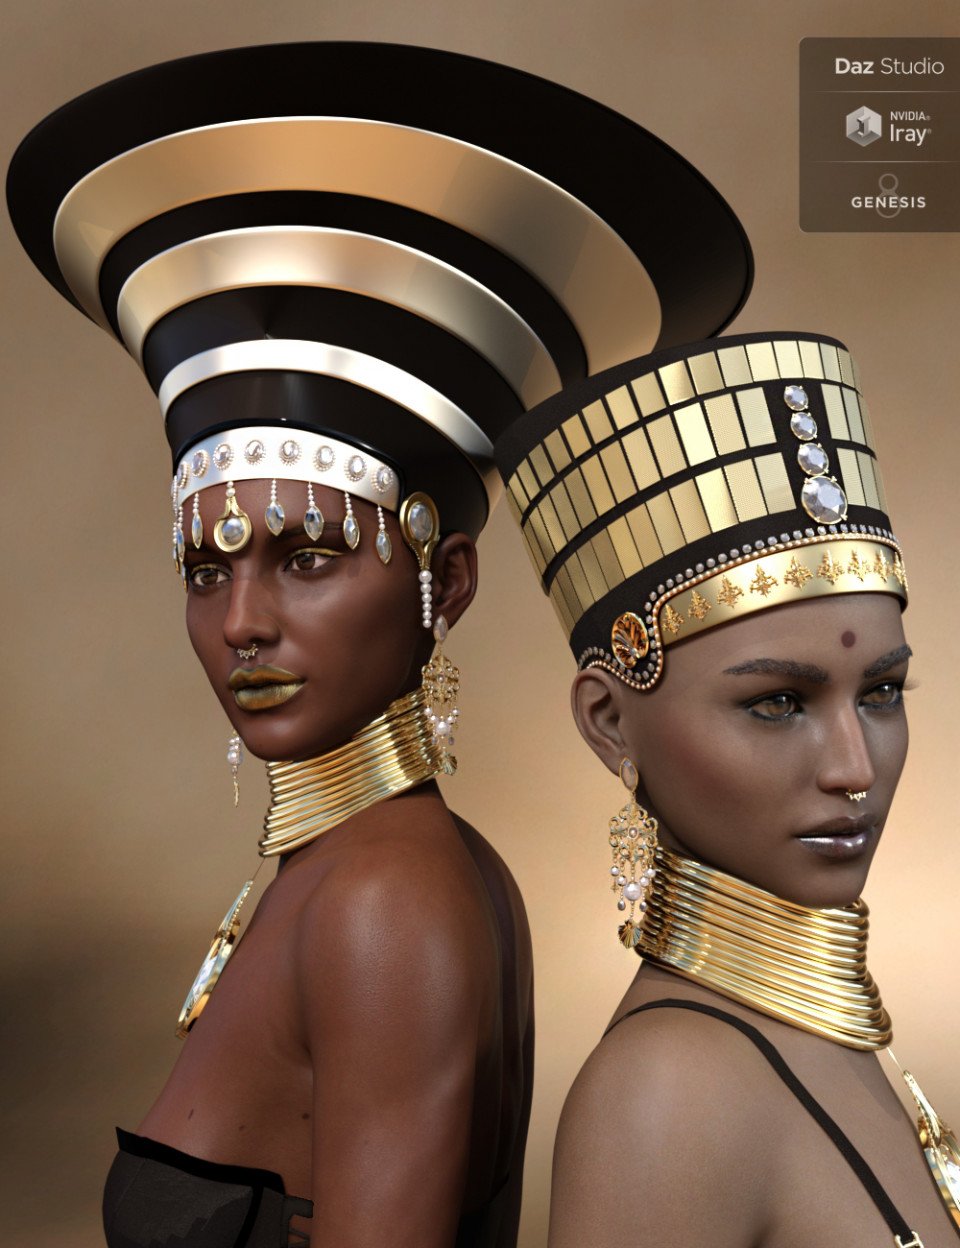 Egyptian – Or Not for Genesis 8 Female_DAZ3D下载站